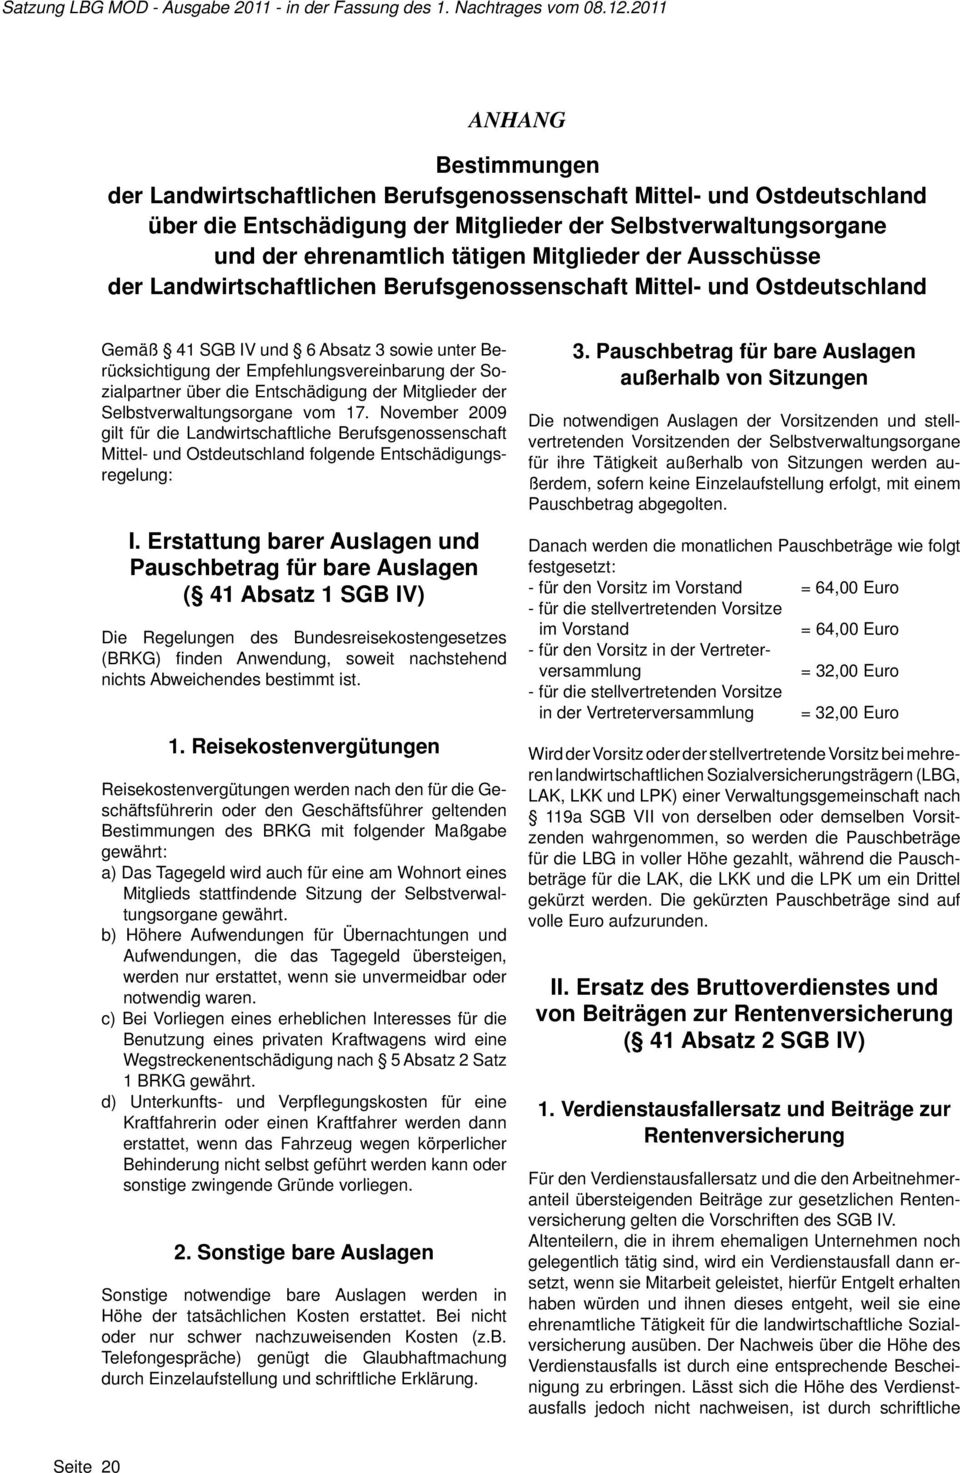 die Entschädigung der Mitglieder der Selbstverwaltungsorgane vom 17. November 2009 gilt für die Landwirtschaftliche Berufsgenossenschaft Mittel- und Ostdeutschland folgende Entschädigungsregelung: I.